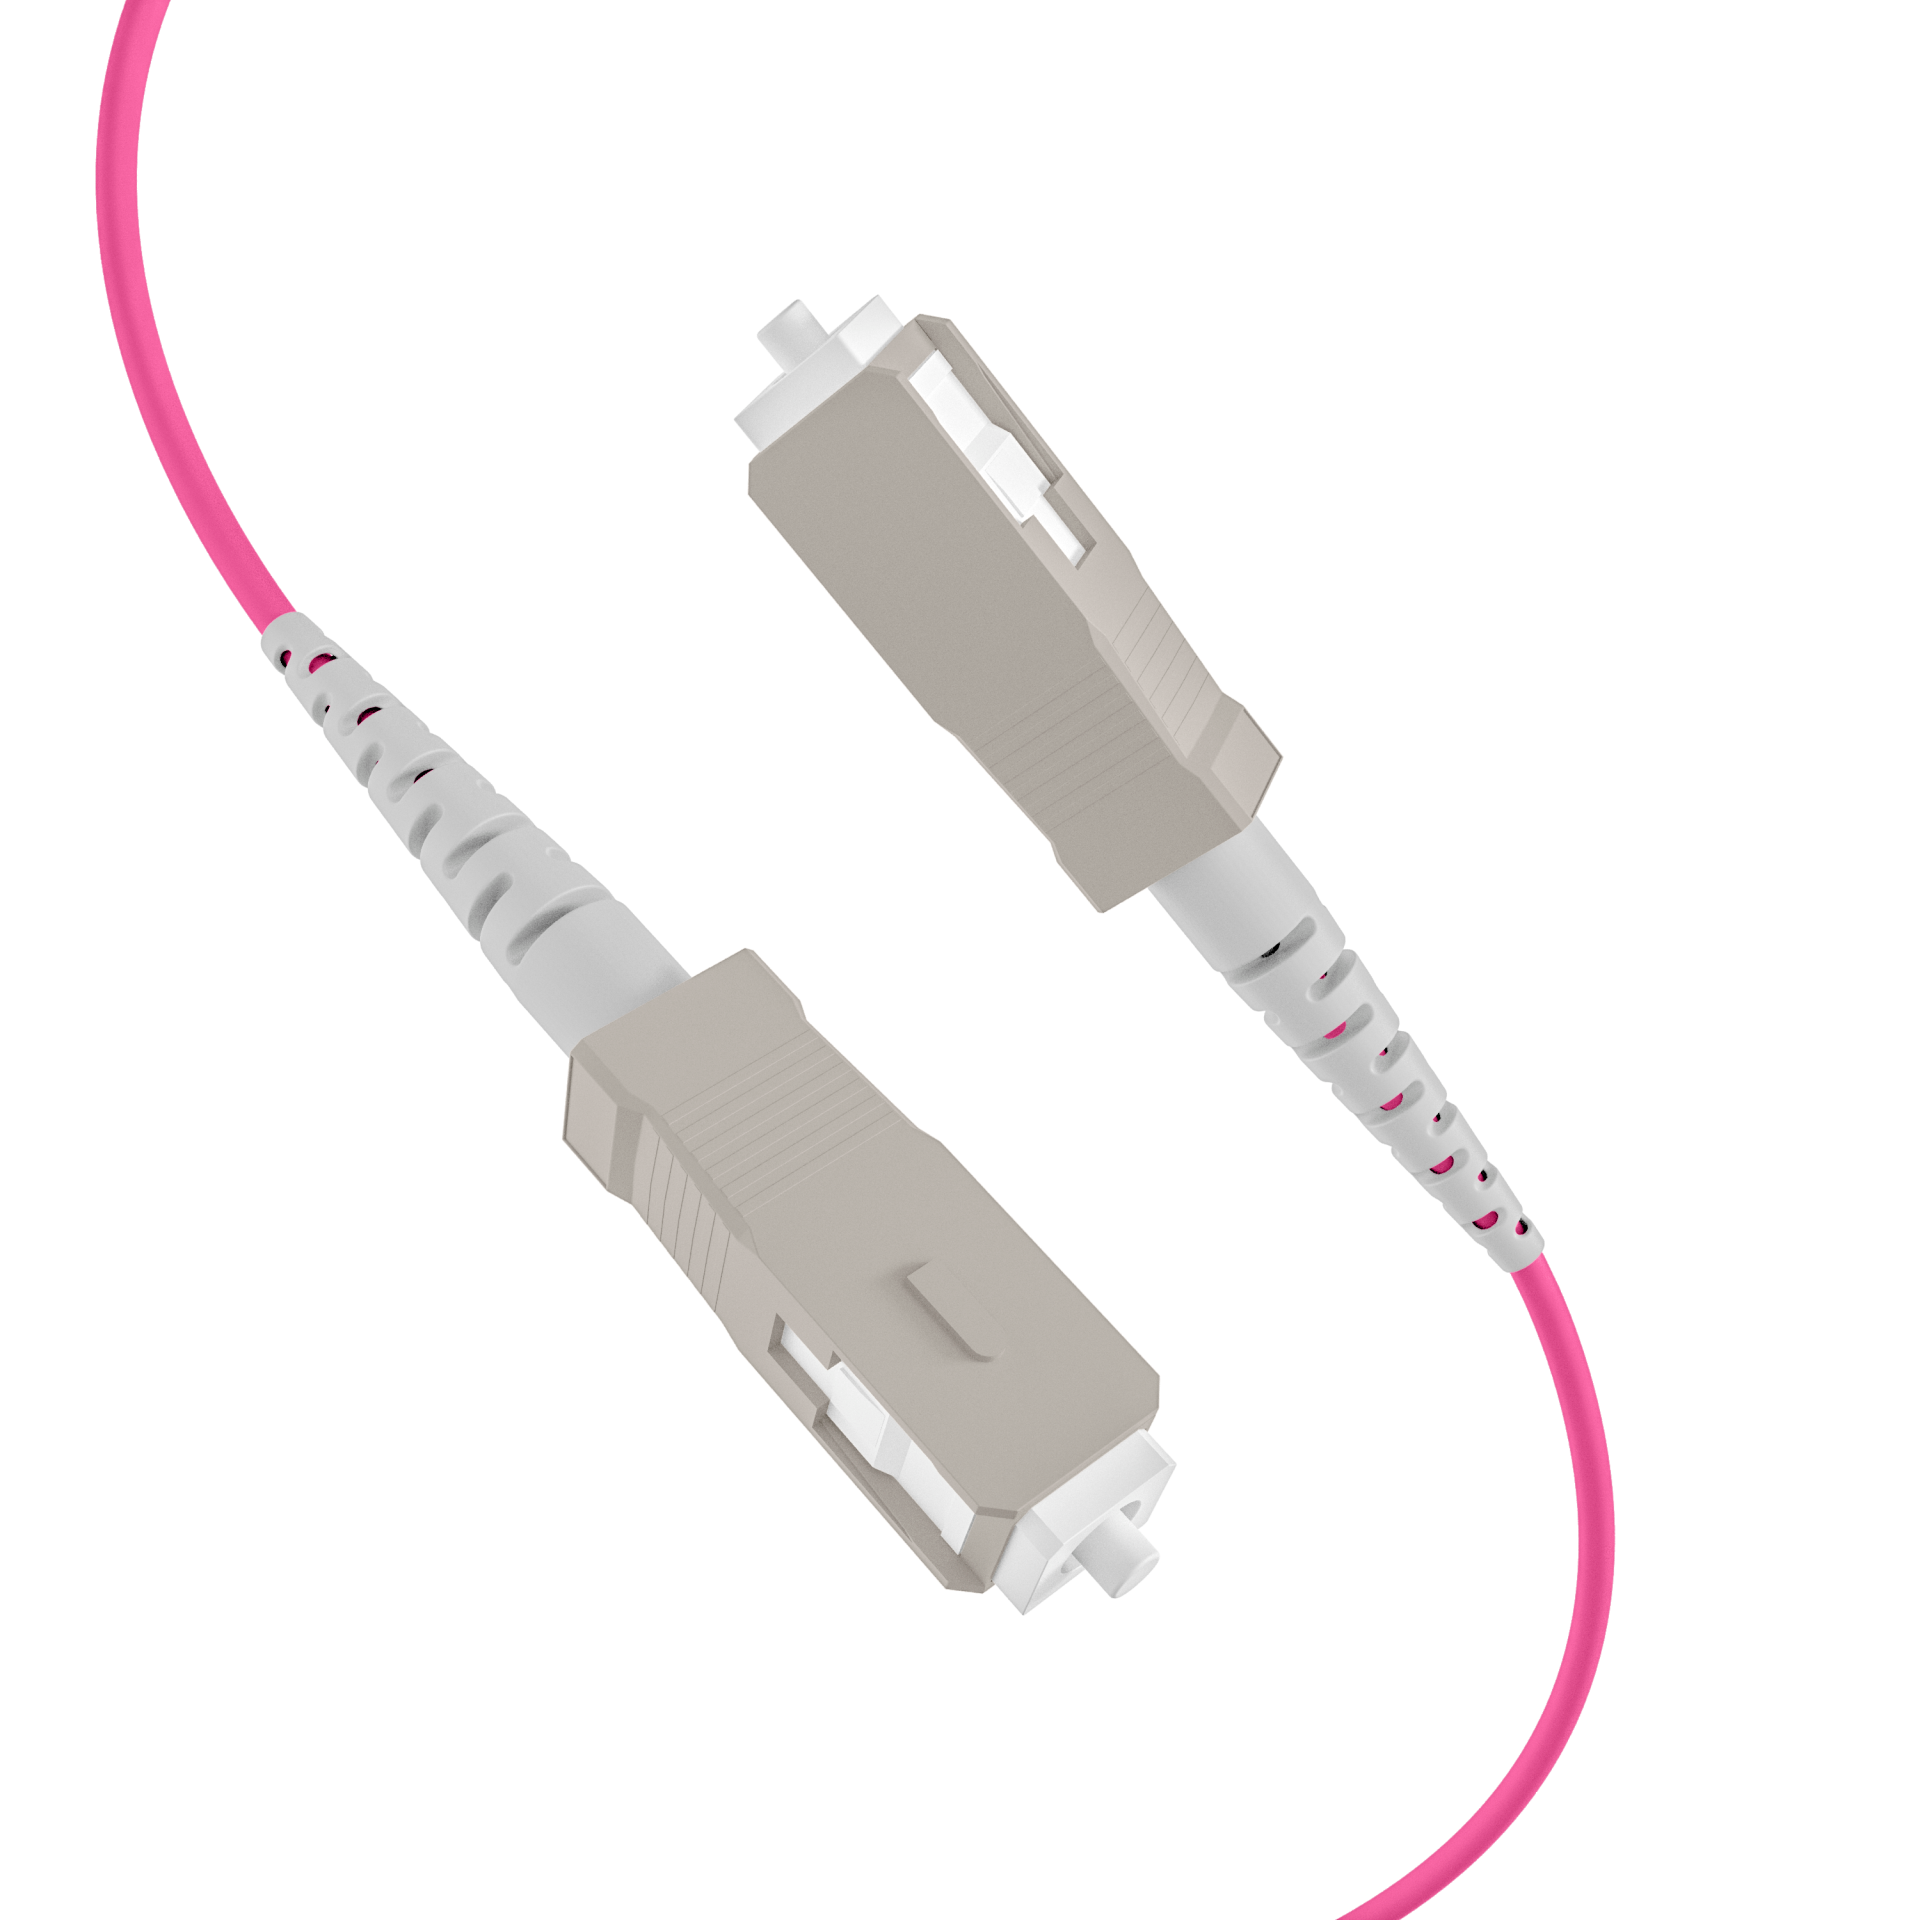 Trunk cable U-DQ(ZN)BH OM4 8G (1x8) SC-SC,50m Dca LSZH